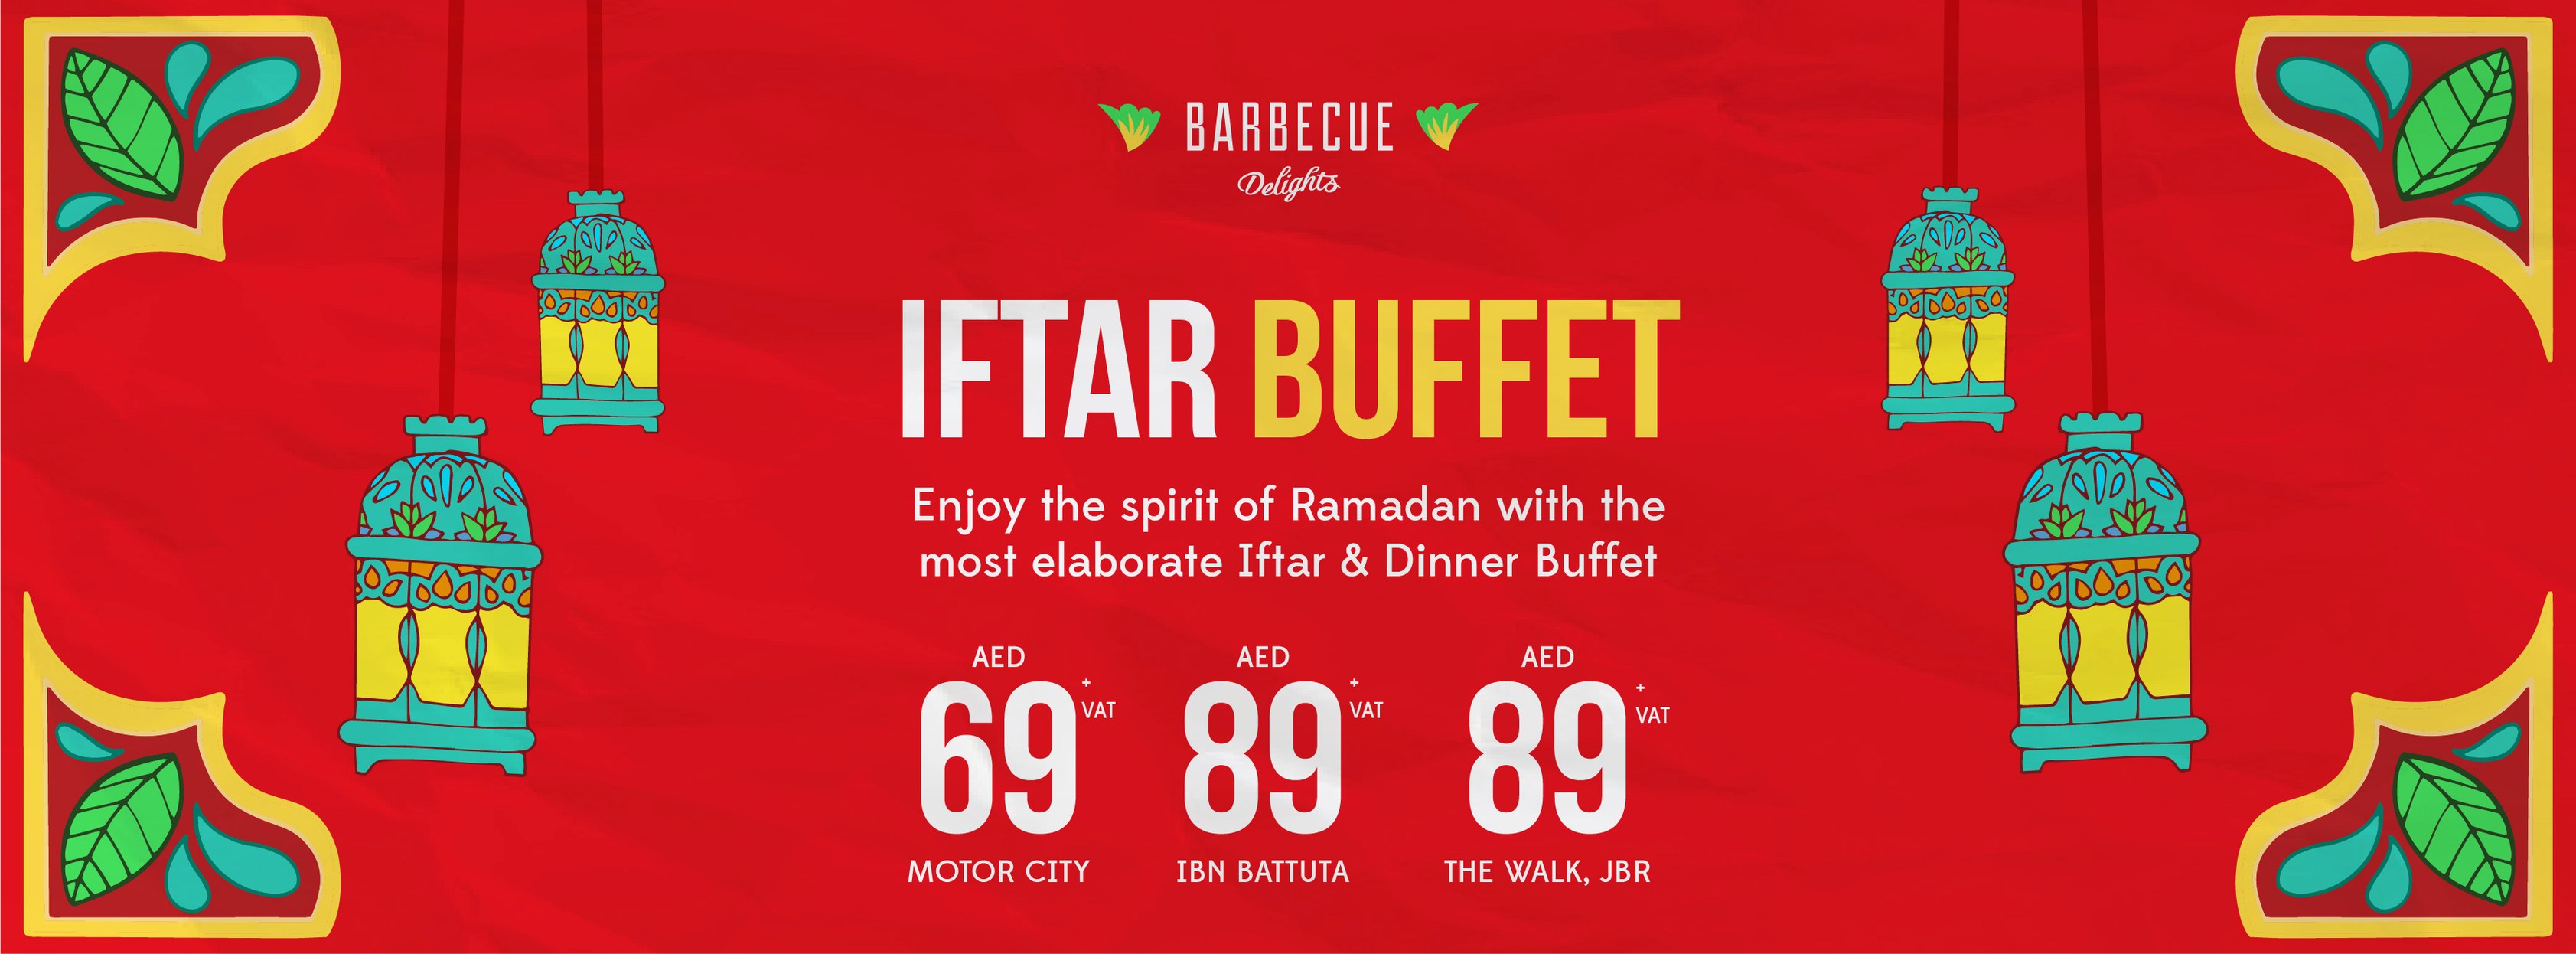 Barbeque Delights Ramadan Iftar Buffet